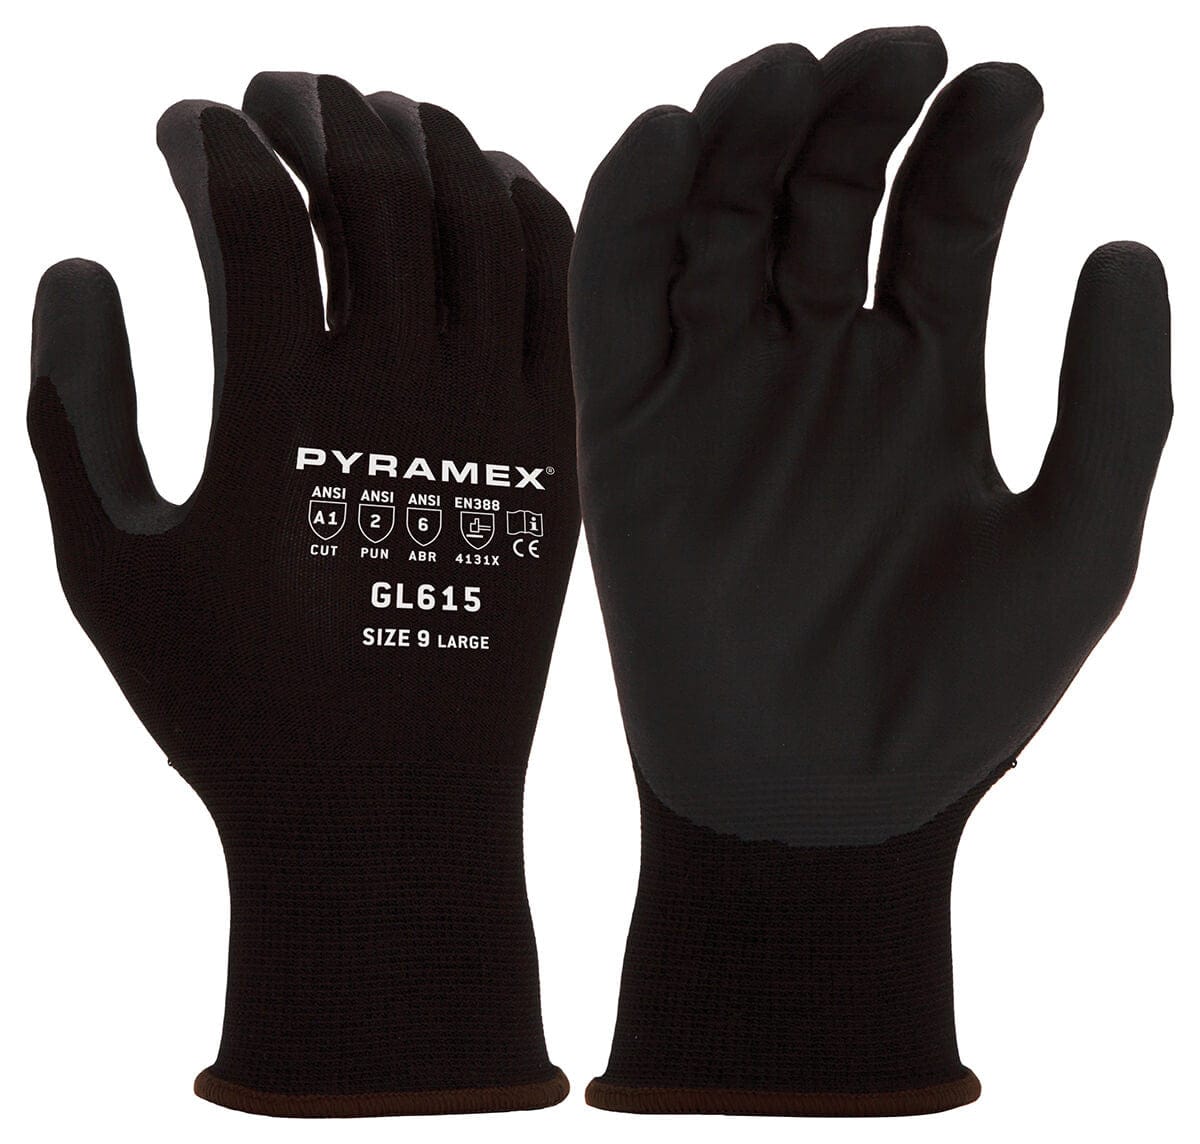 Pyramex GL615 Cut-Resistant A1 Nitrile Foam Dipped Gloves GL615